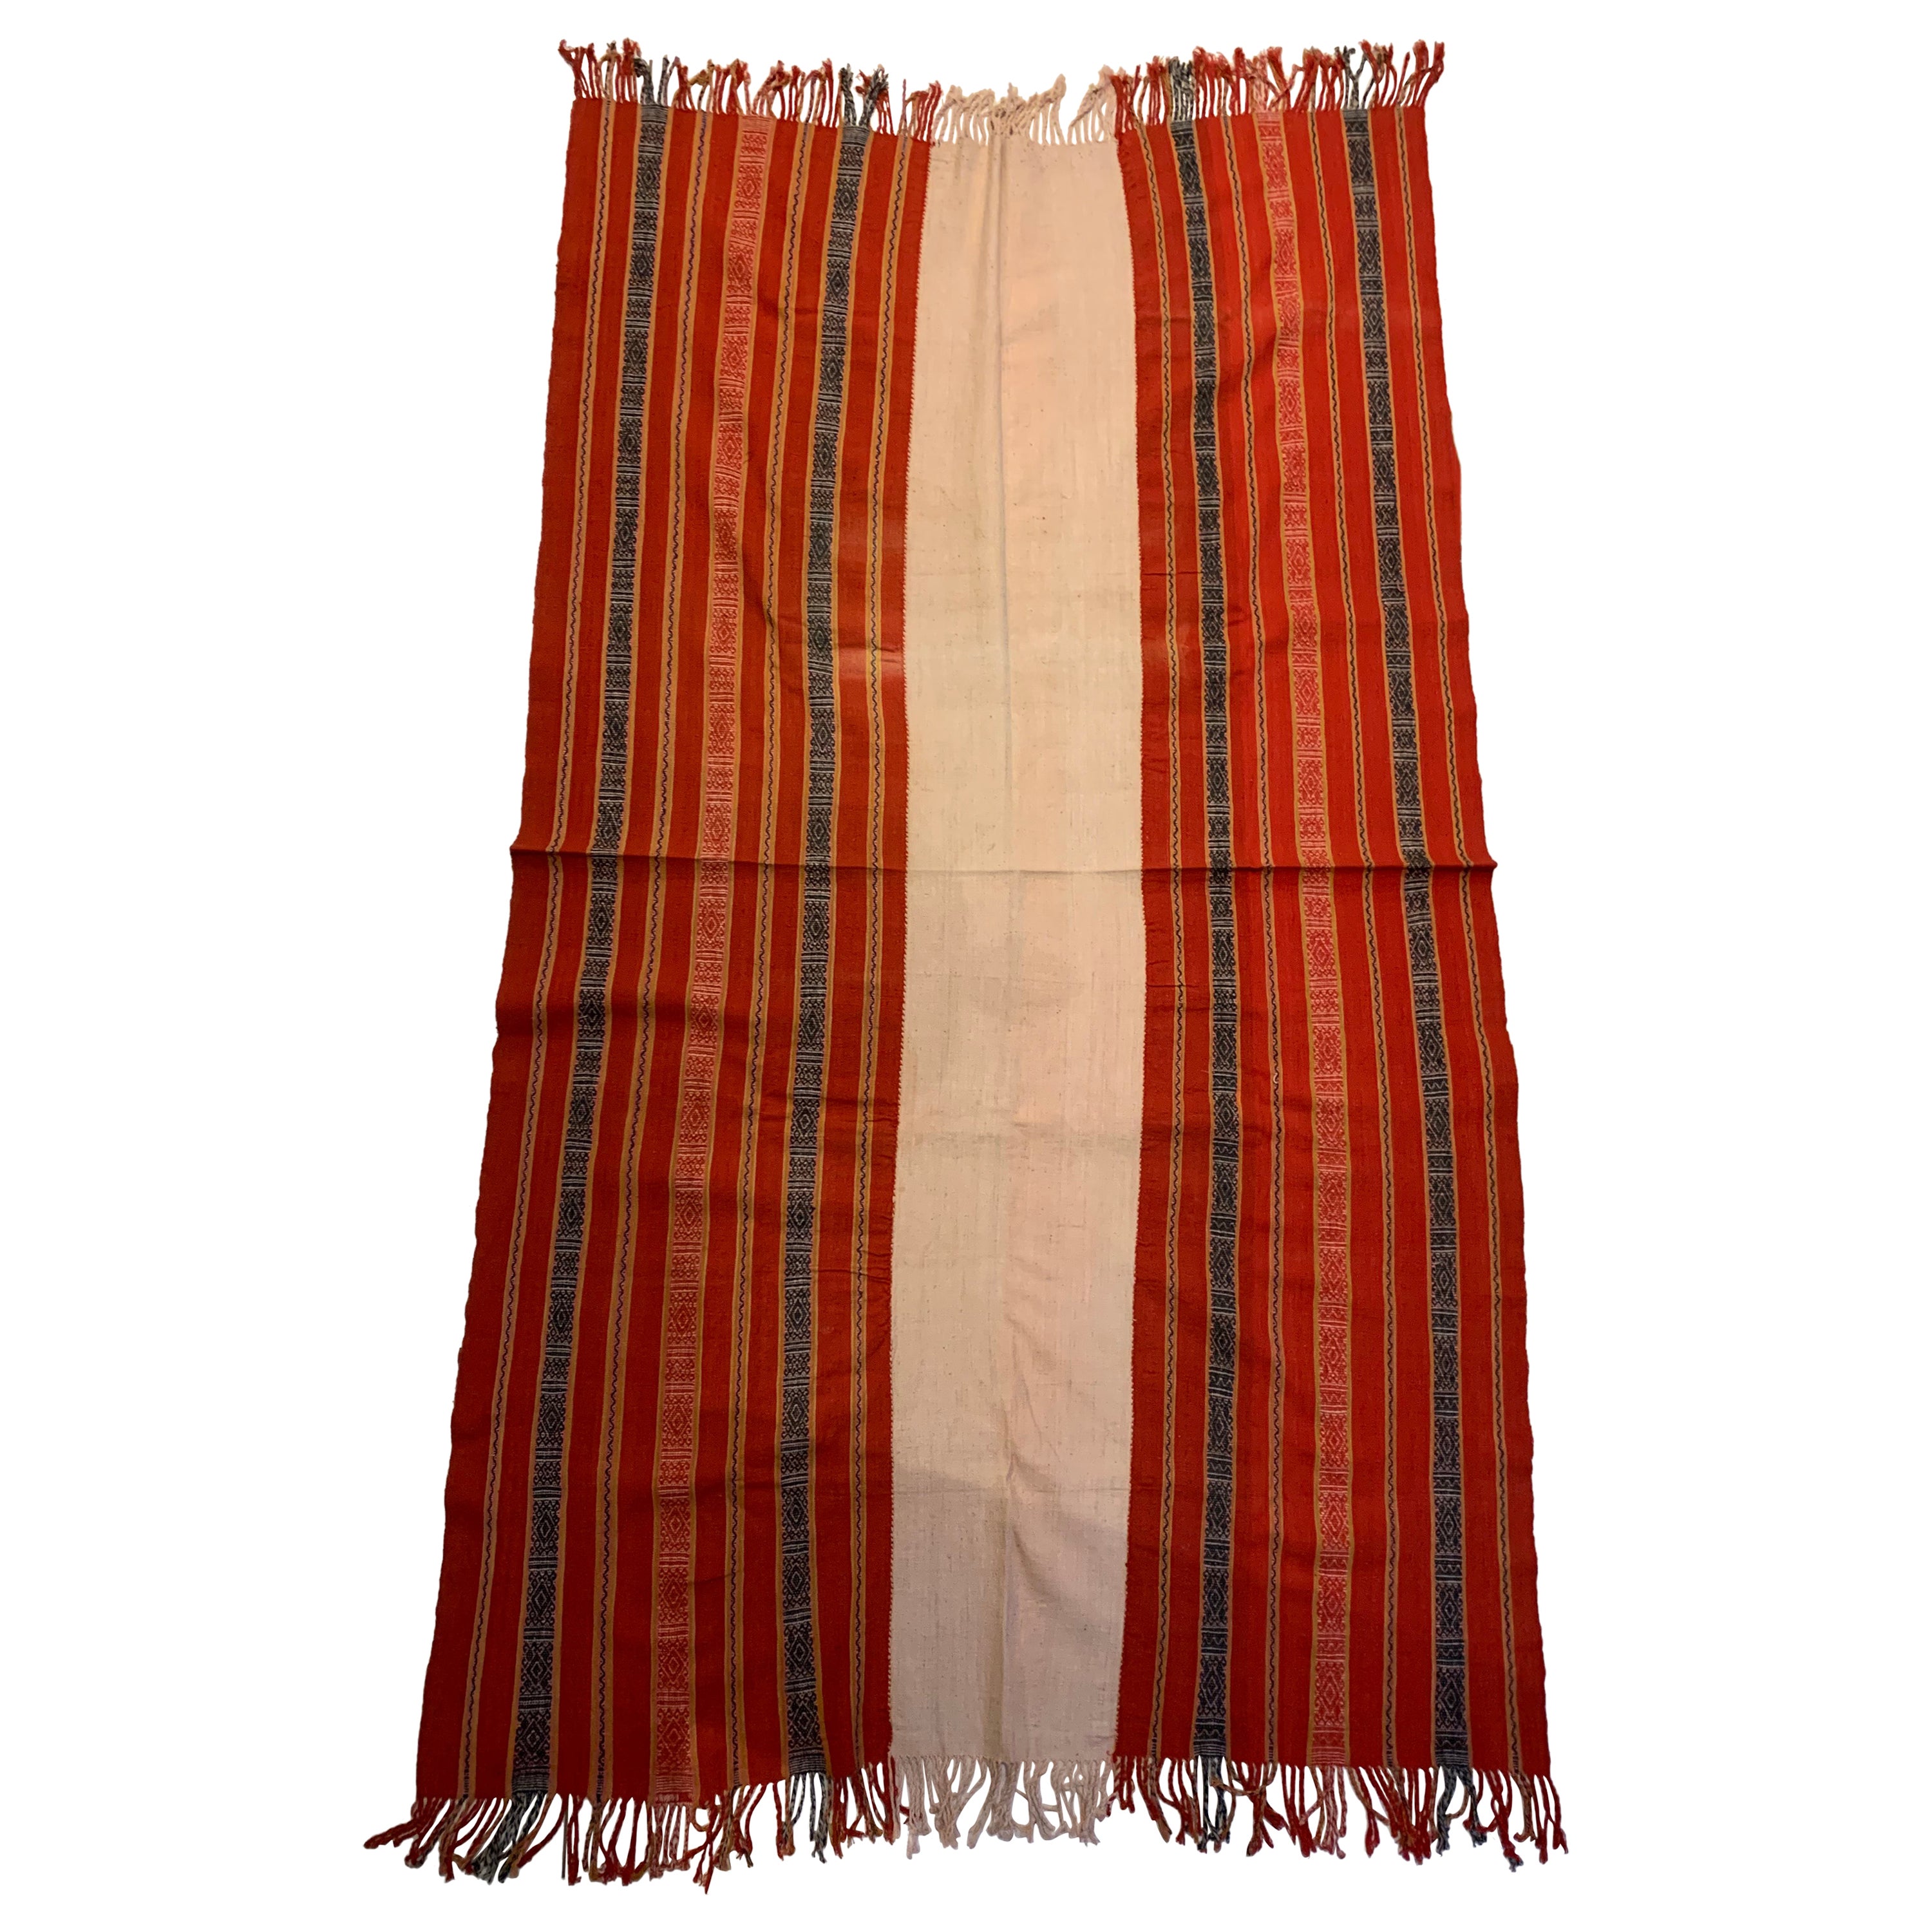 Textile Ikat de Timor - Étonnants motifs et couleurs tribaux, Indonésie, vers 1950